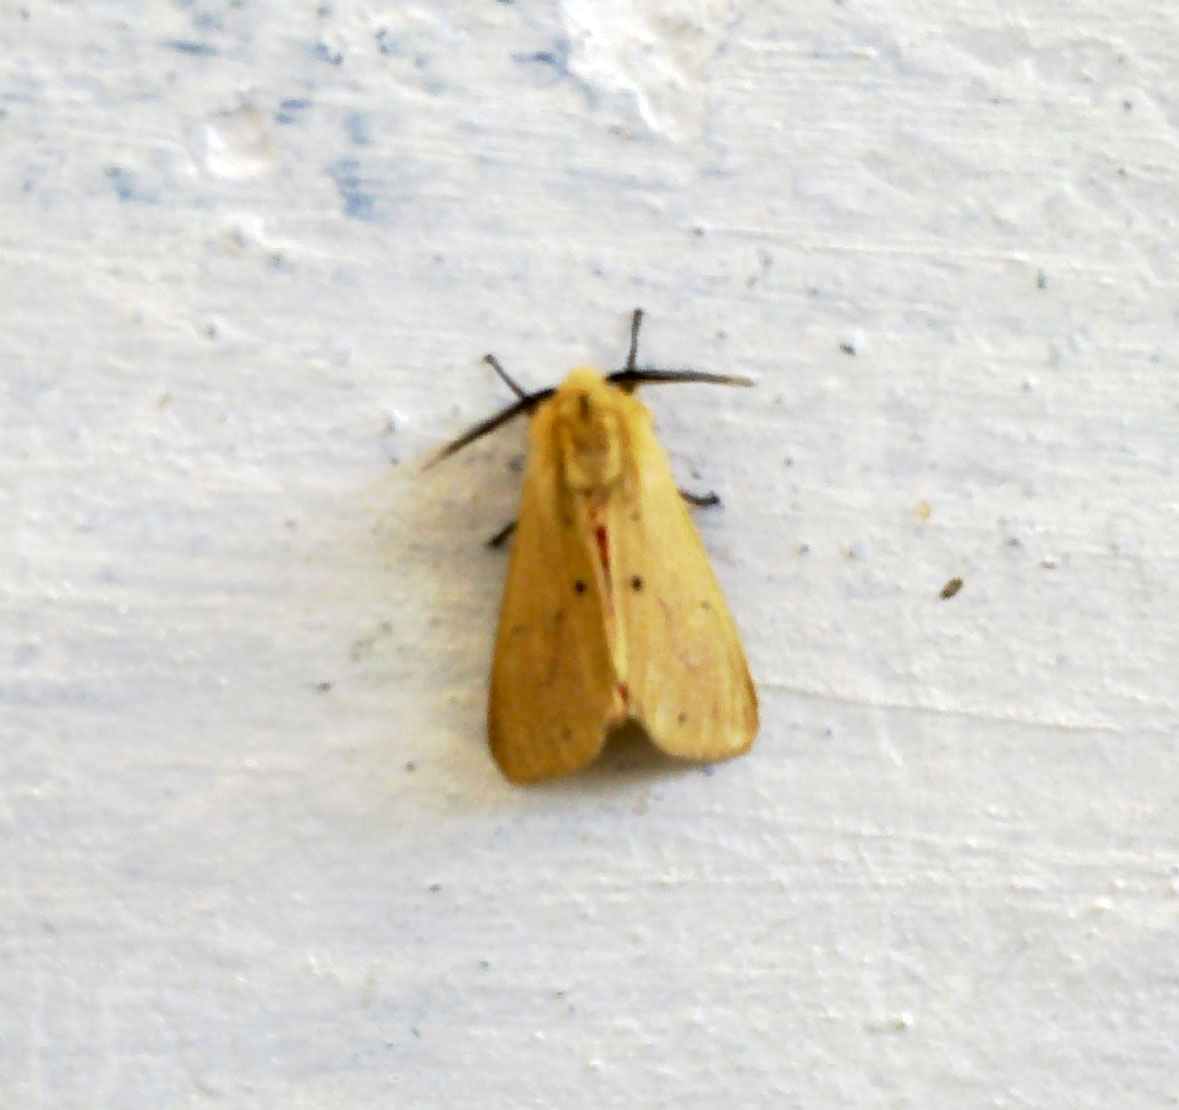 A pale yellow moth